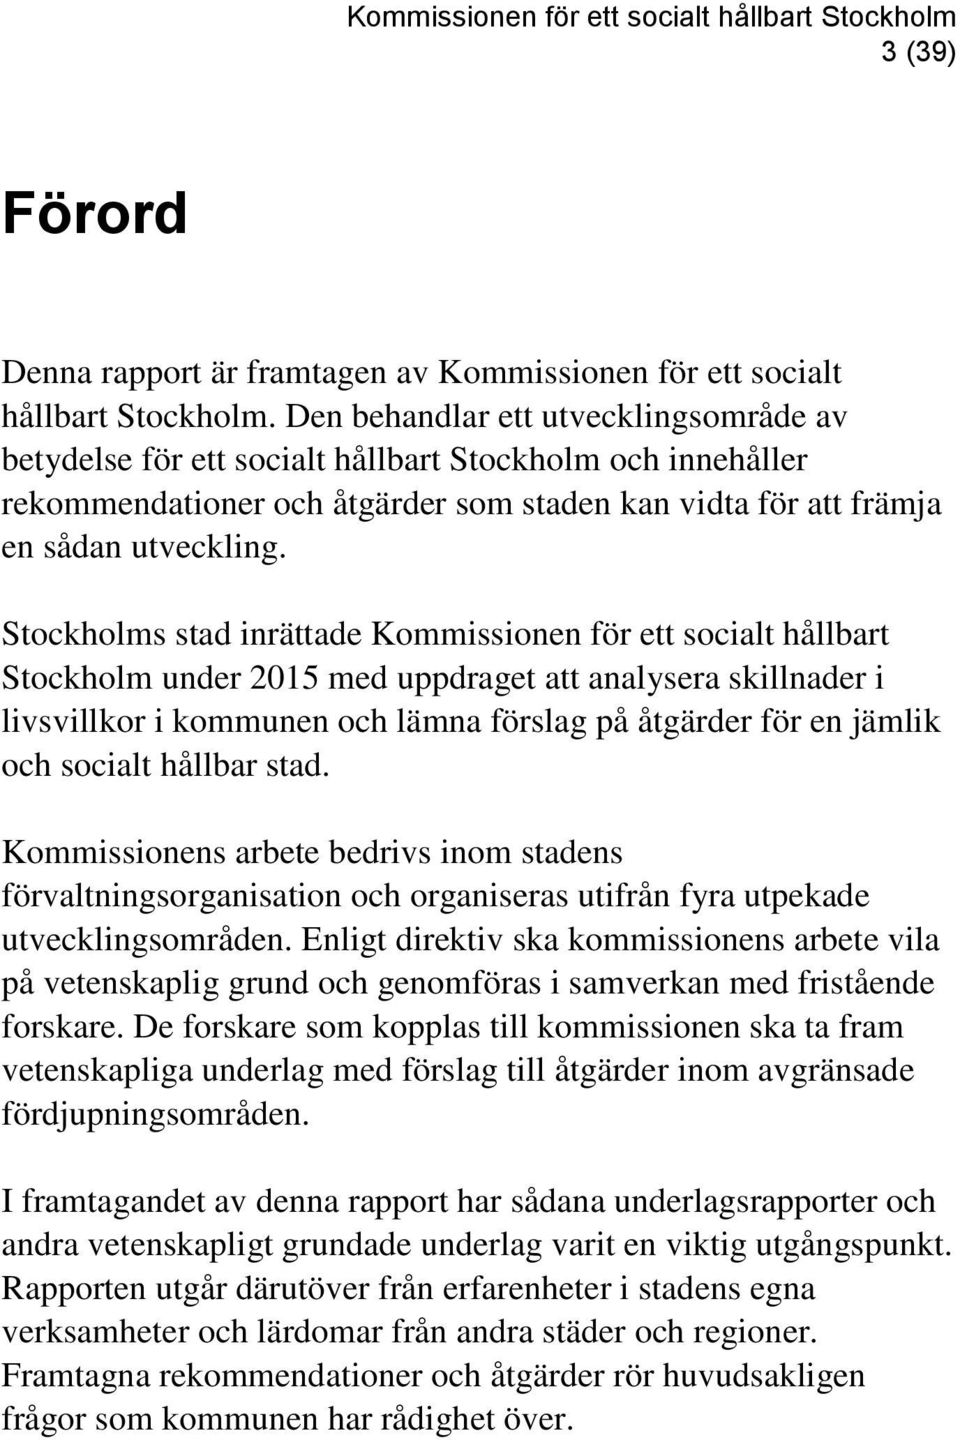 Stockholms stad inrättade Kommissionen för ett socialt hållbart Stockholm under 2015 med uppdraget att analysera skillnader i livsvillkor i kommunen och lämna förslag på åtgärder för en jämlik och